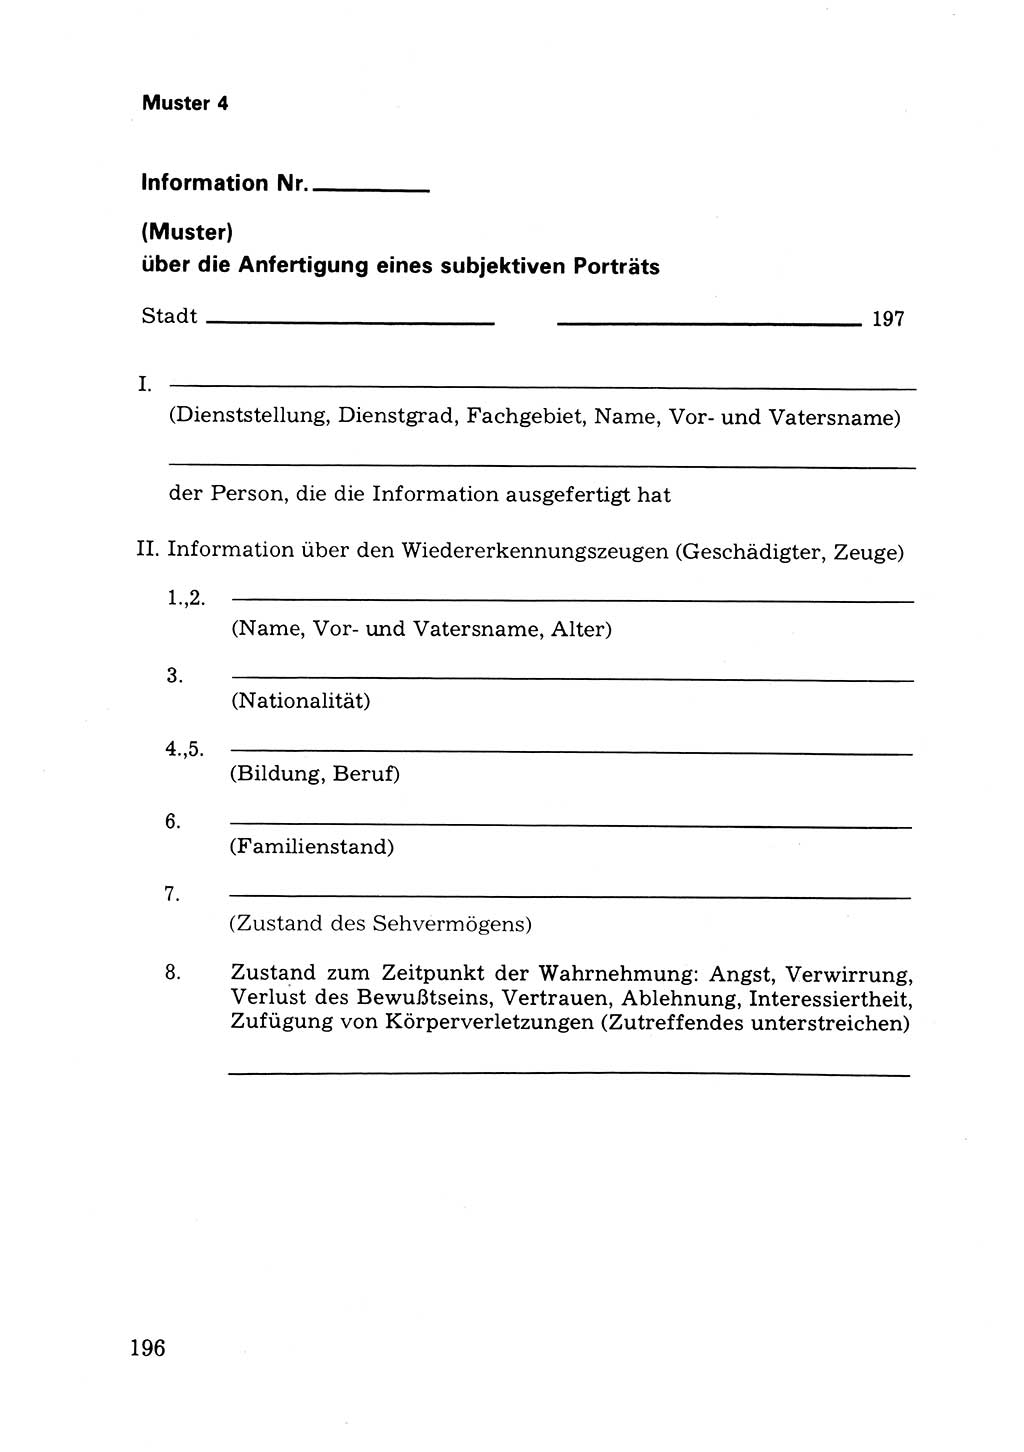 Das subjektive Porträt [Deutsche Demokratische Republik (DDR)] 1981, Seite 196 (Subj. Port. DDR 1981, S. 196)